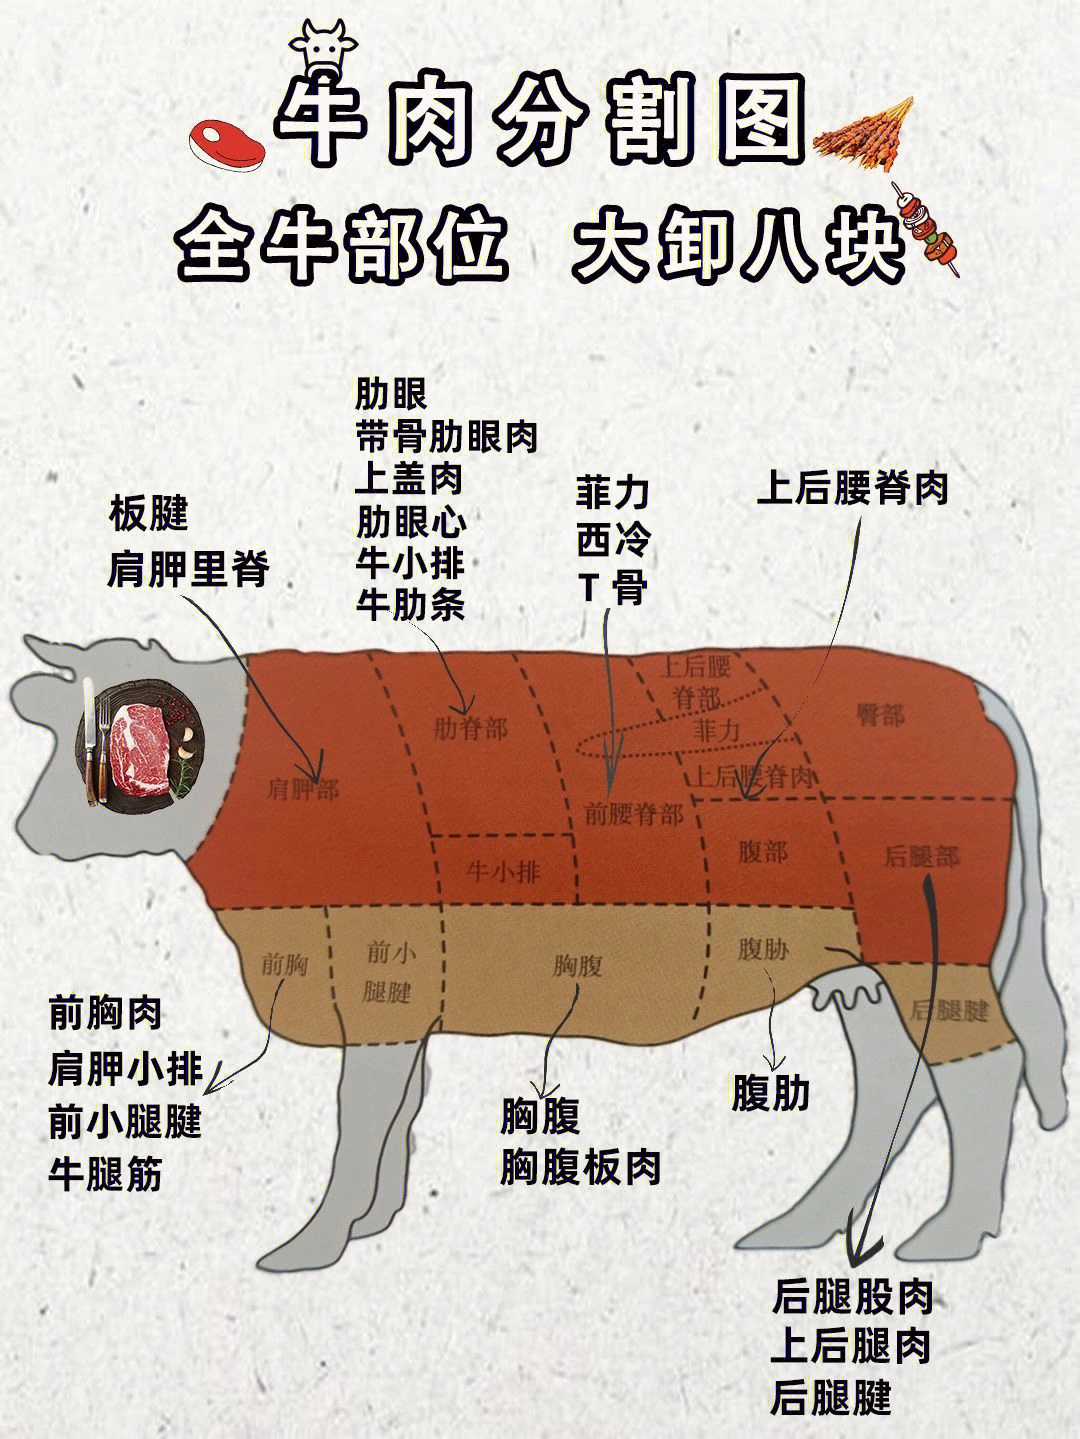 牛全身器官部位图解图片